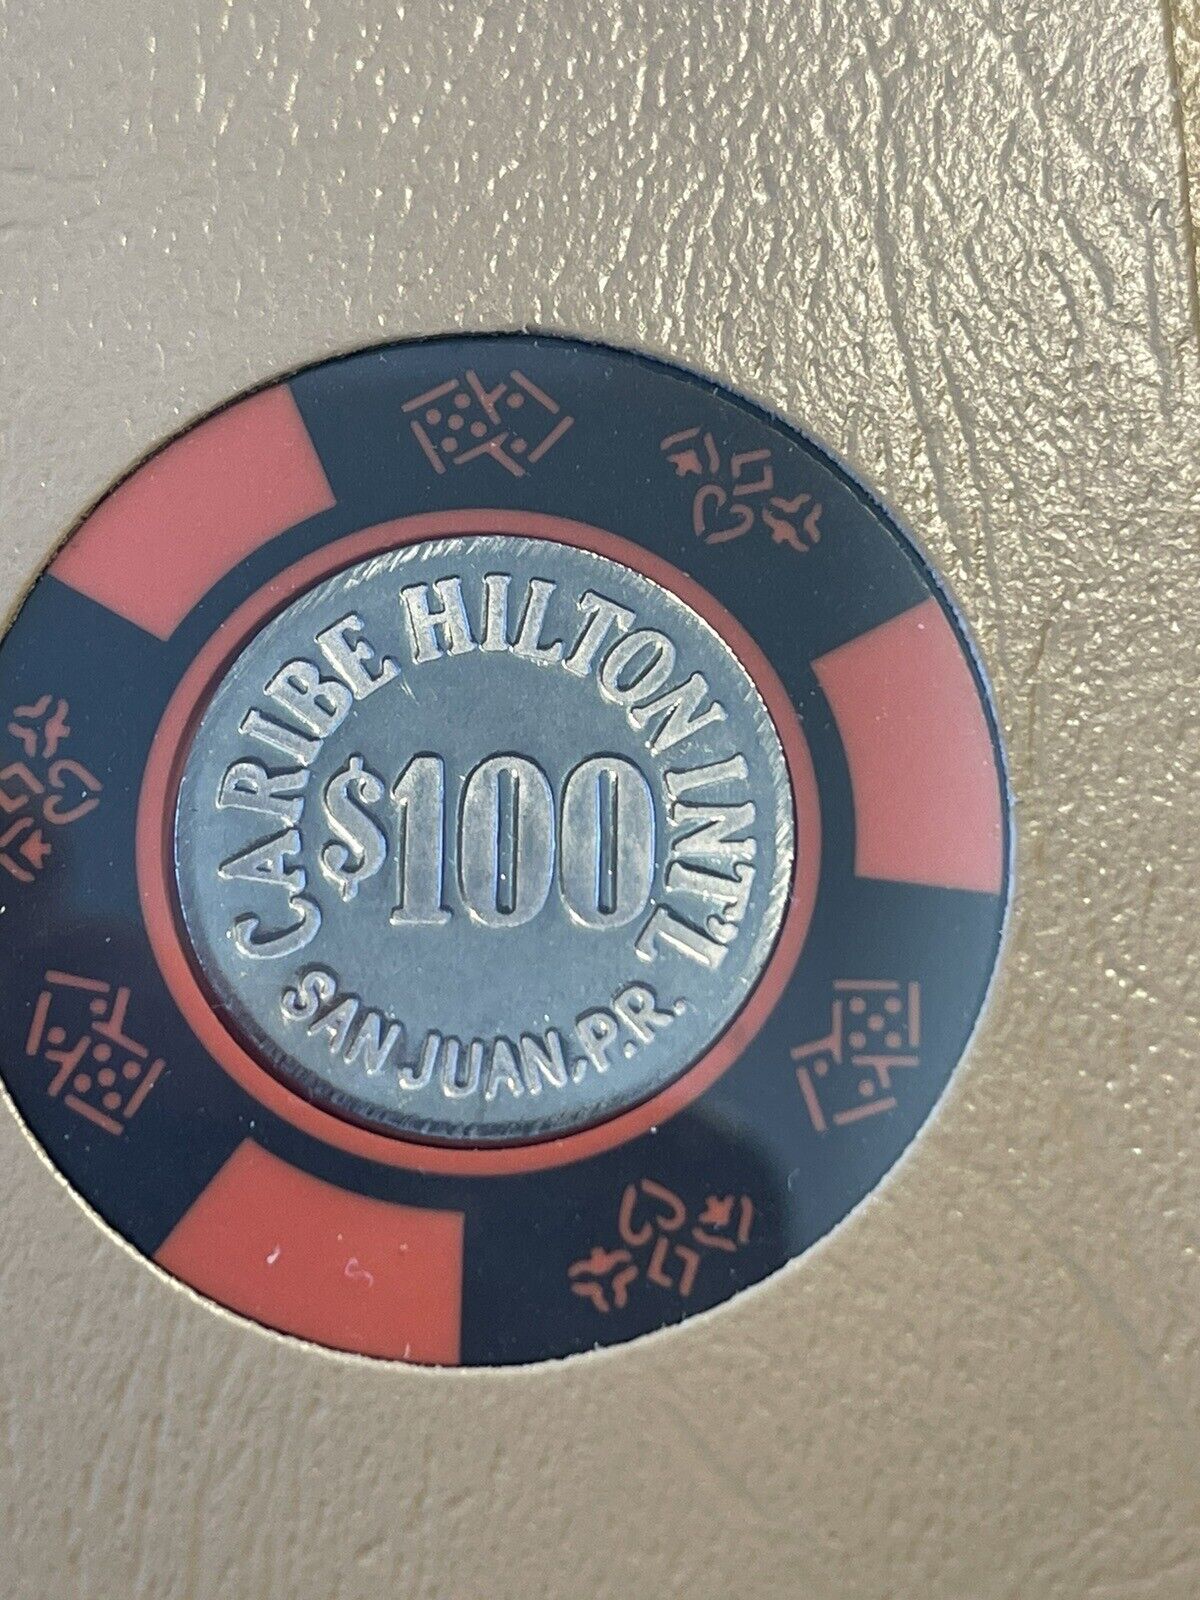 $100 Caribe Hilton San Juan Puerto Rico Casino Chip CHC-100C ***Very Rare***